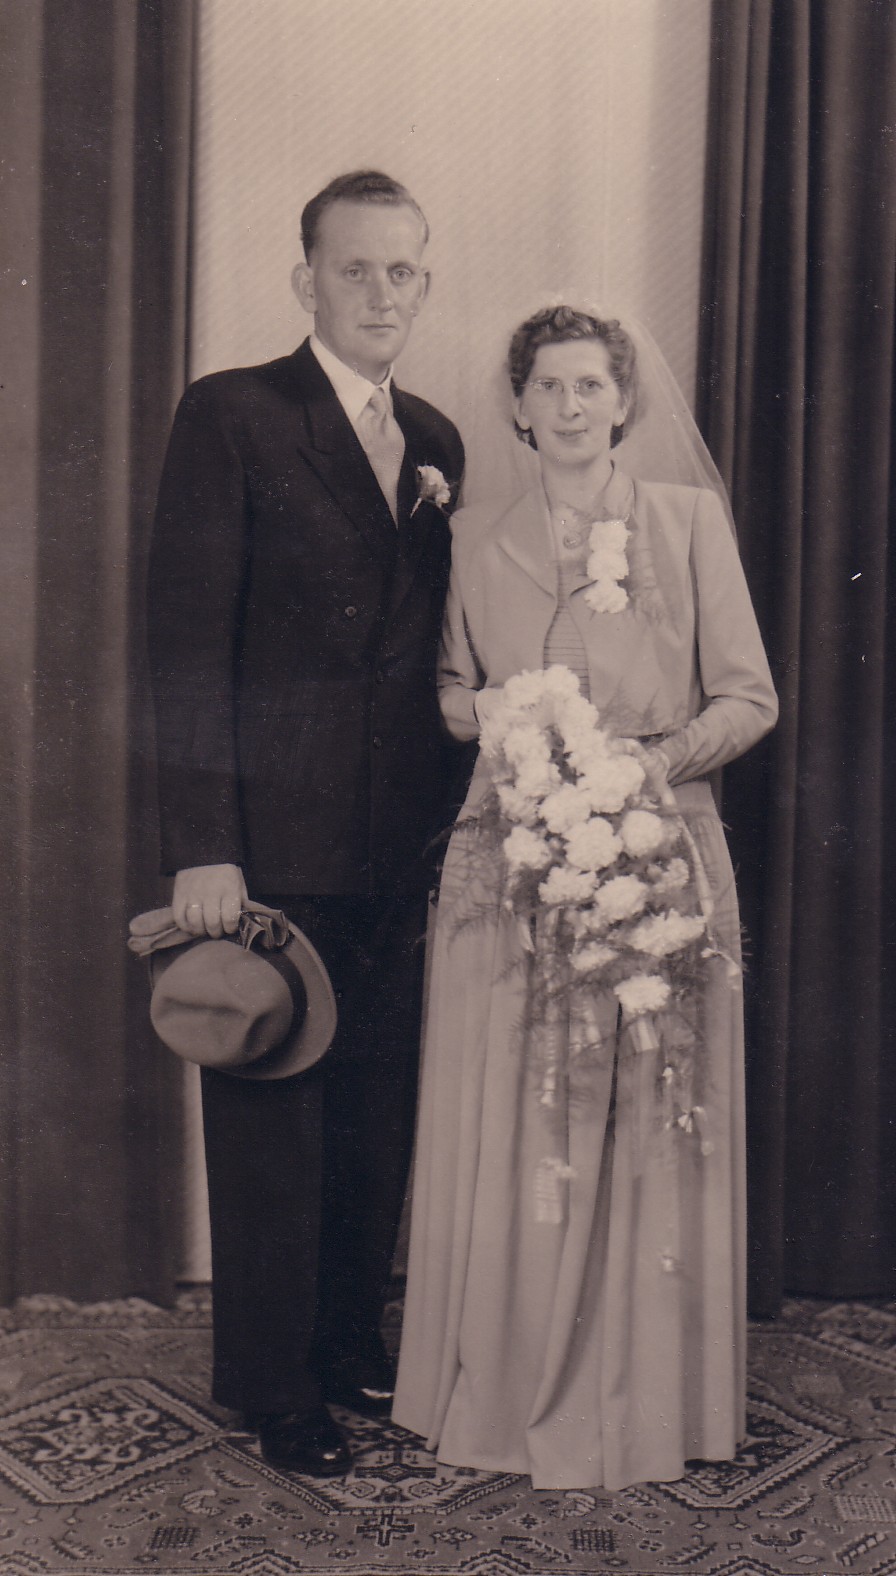 Huwelijk Albert Breedijk en Elisabeth Keijzer (1951)